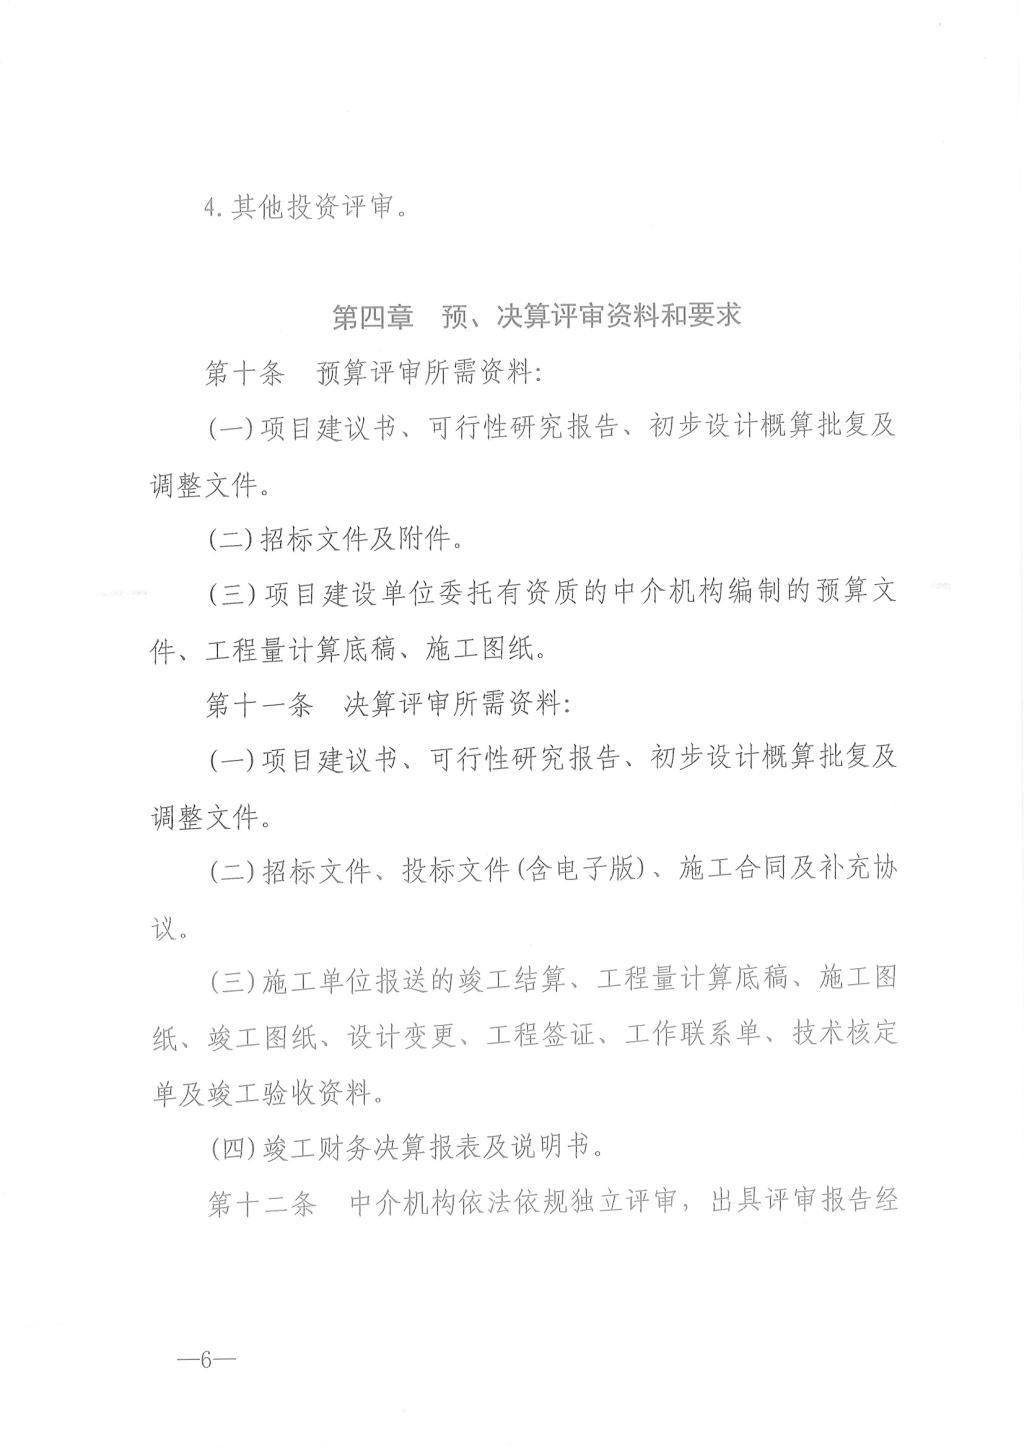 江西省省级政府投资建设项目预决算评审办法9.jpg